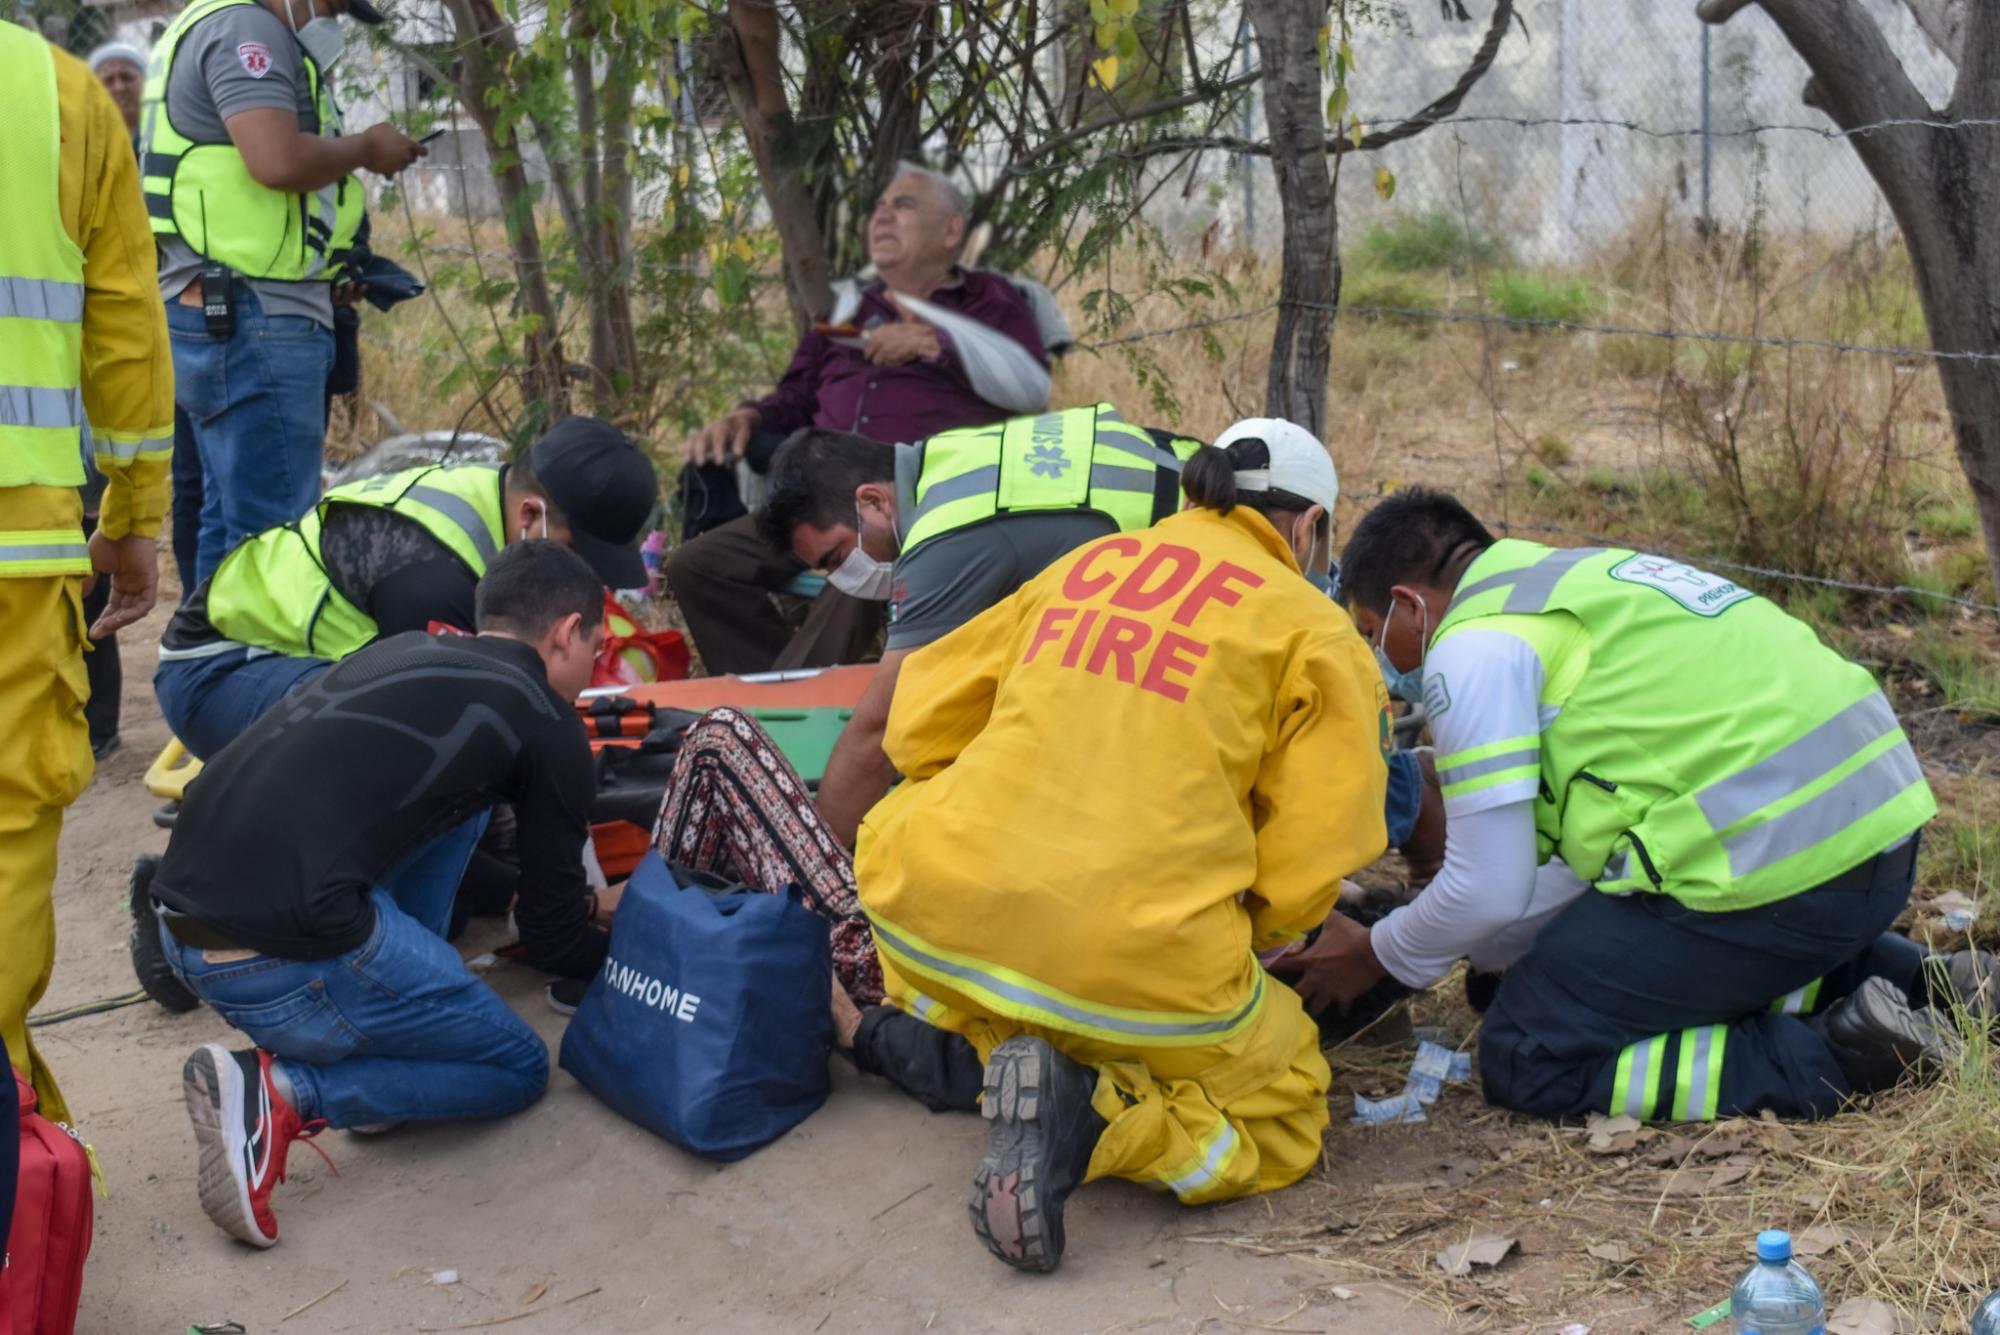 $!Otro ‘camionazo’, ahora en los límites Sonora-Sinaloa; impacta tráiler a autobús, hay 25 heridos